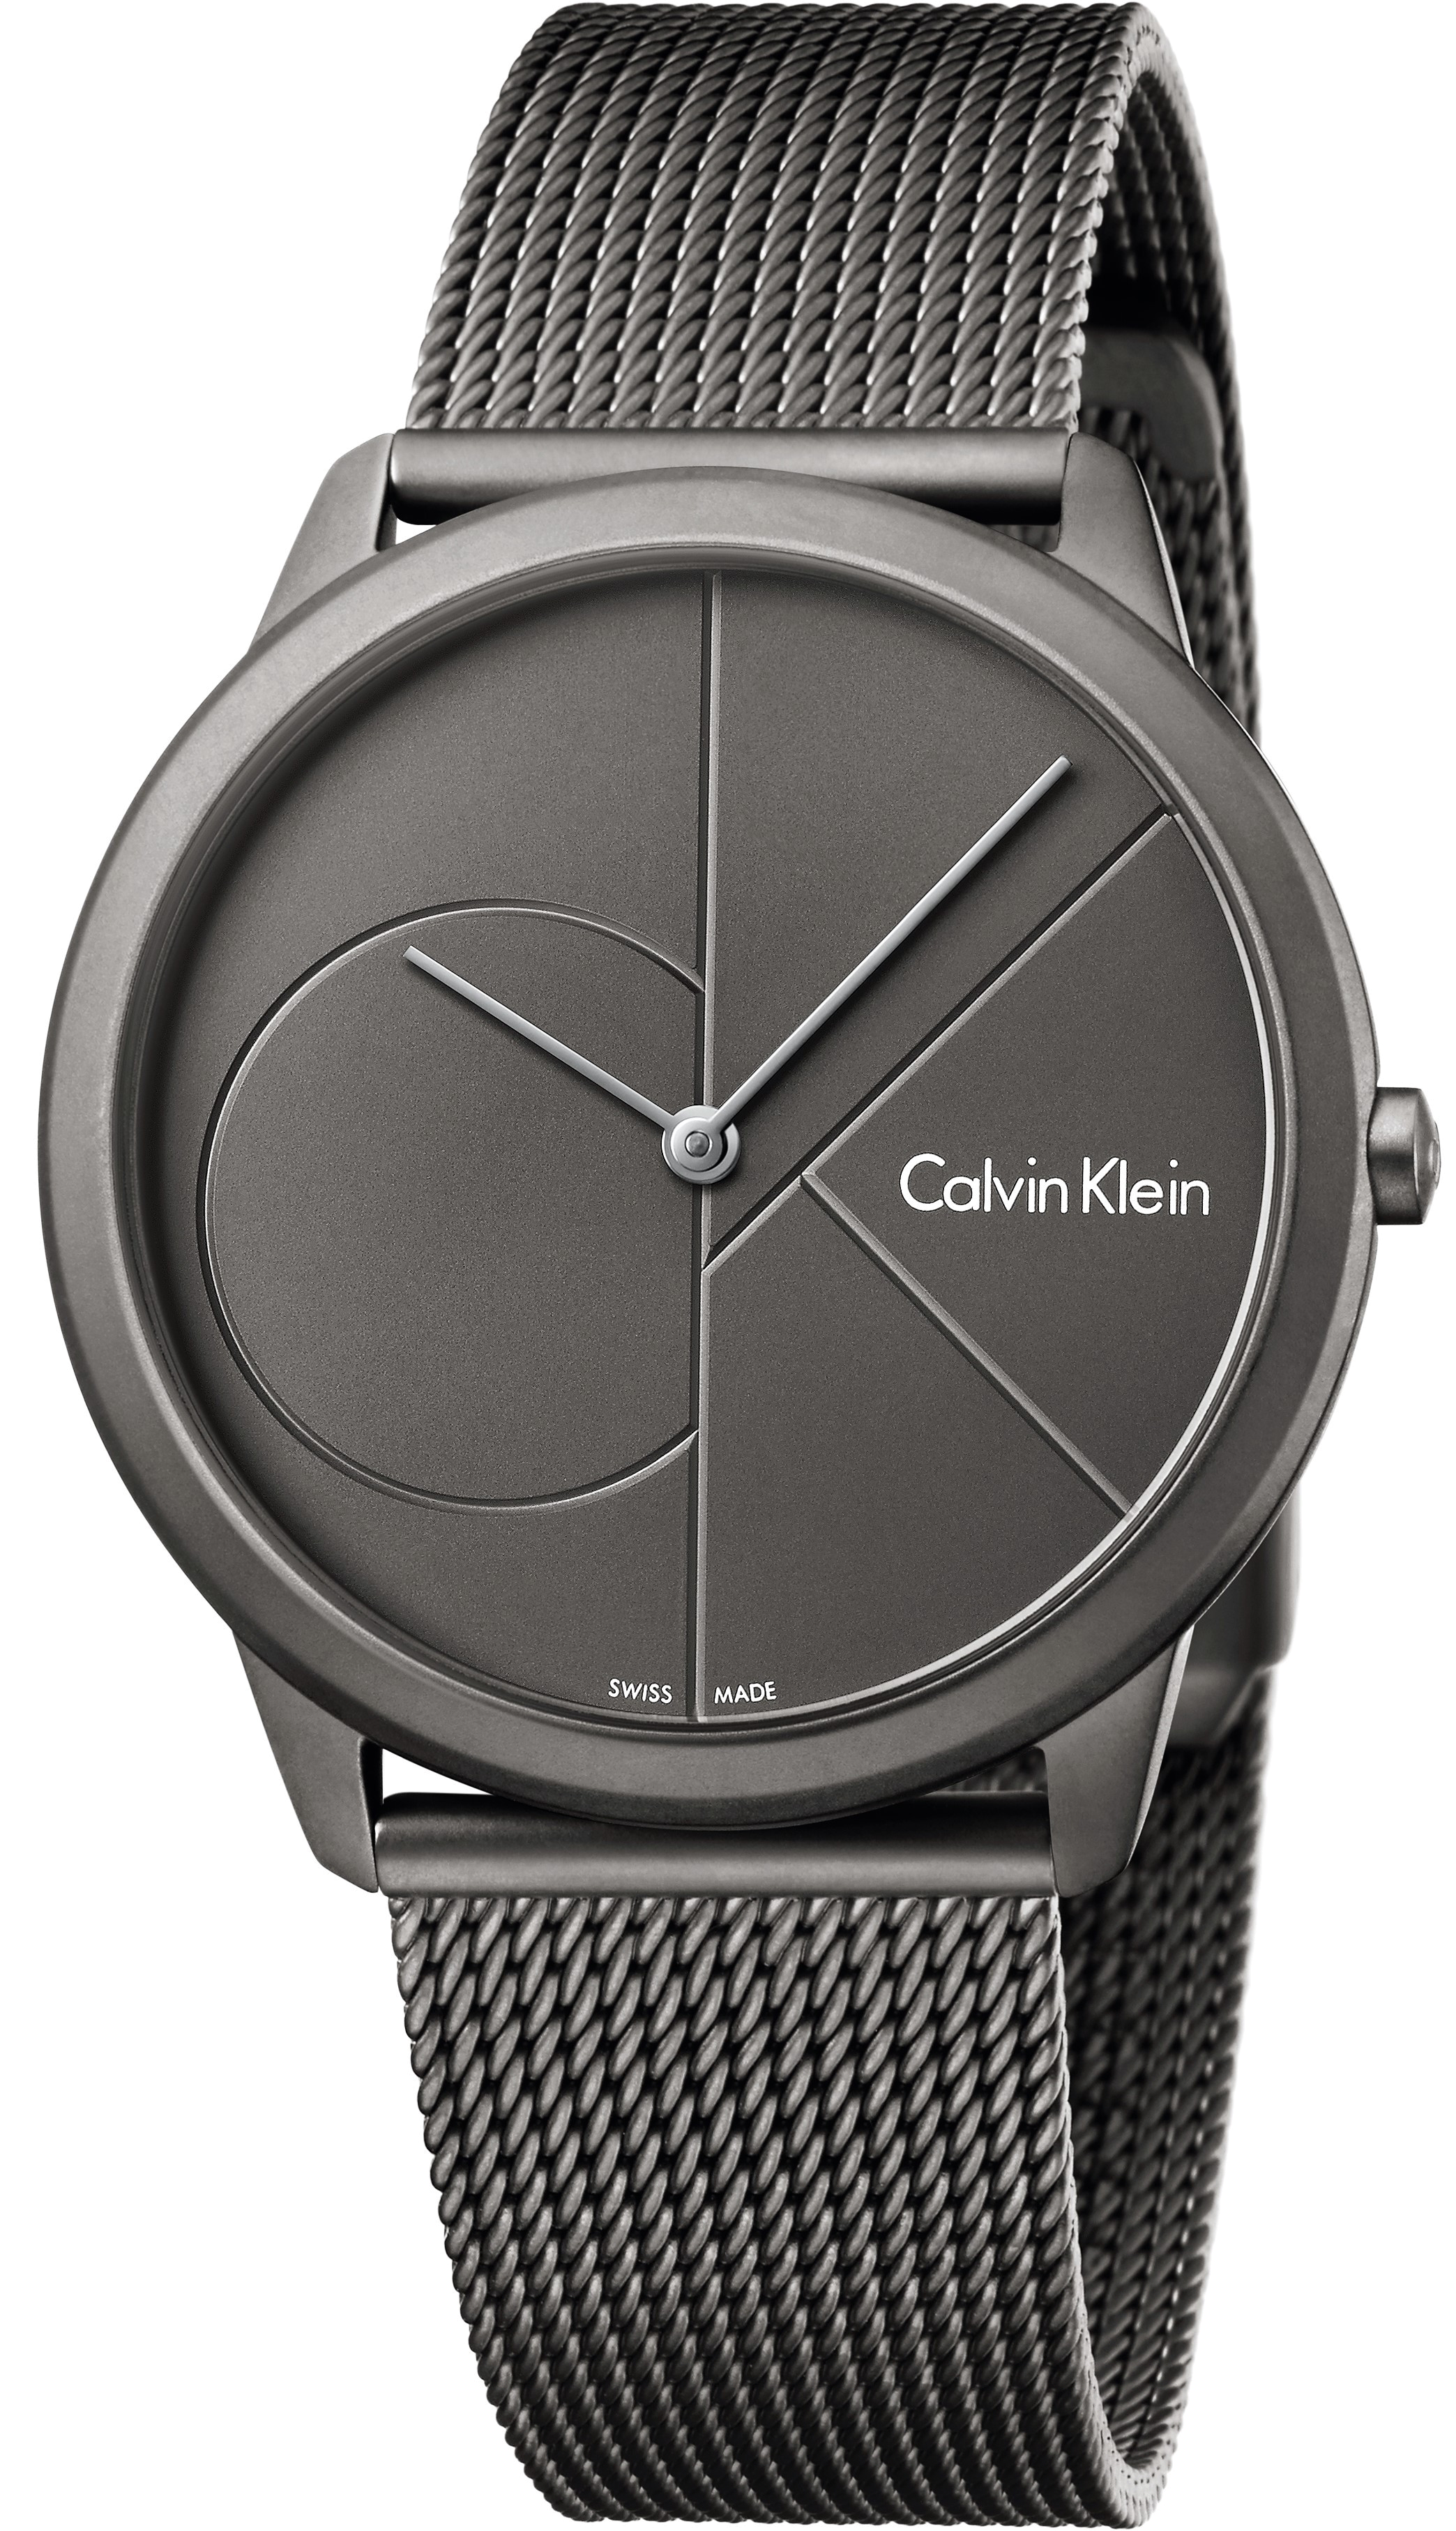 Оригинал часов кельвин кляйн. Наручные часы Calvin Klein k3m517.p4. Часы Calvin Klein Minimal. Часы Calvin Klein k7627120. Часы Calvin Klein k2g271c3.